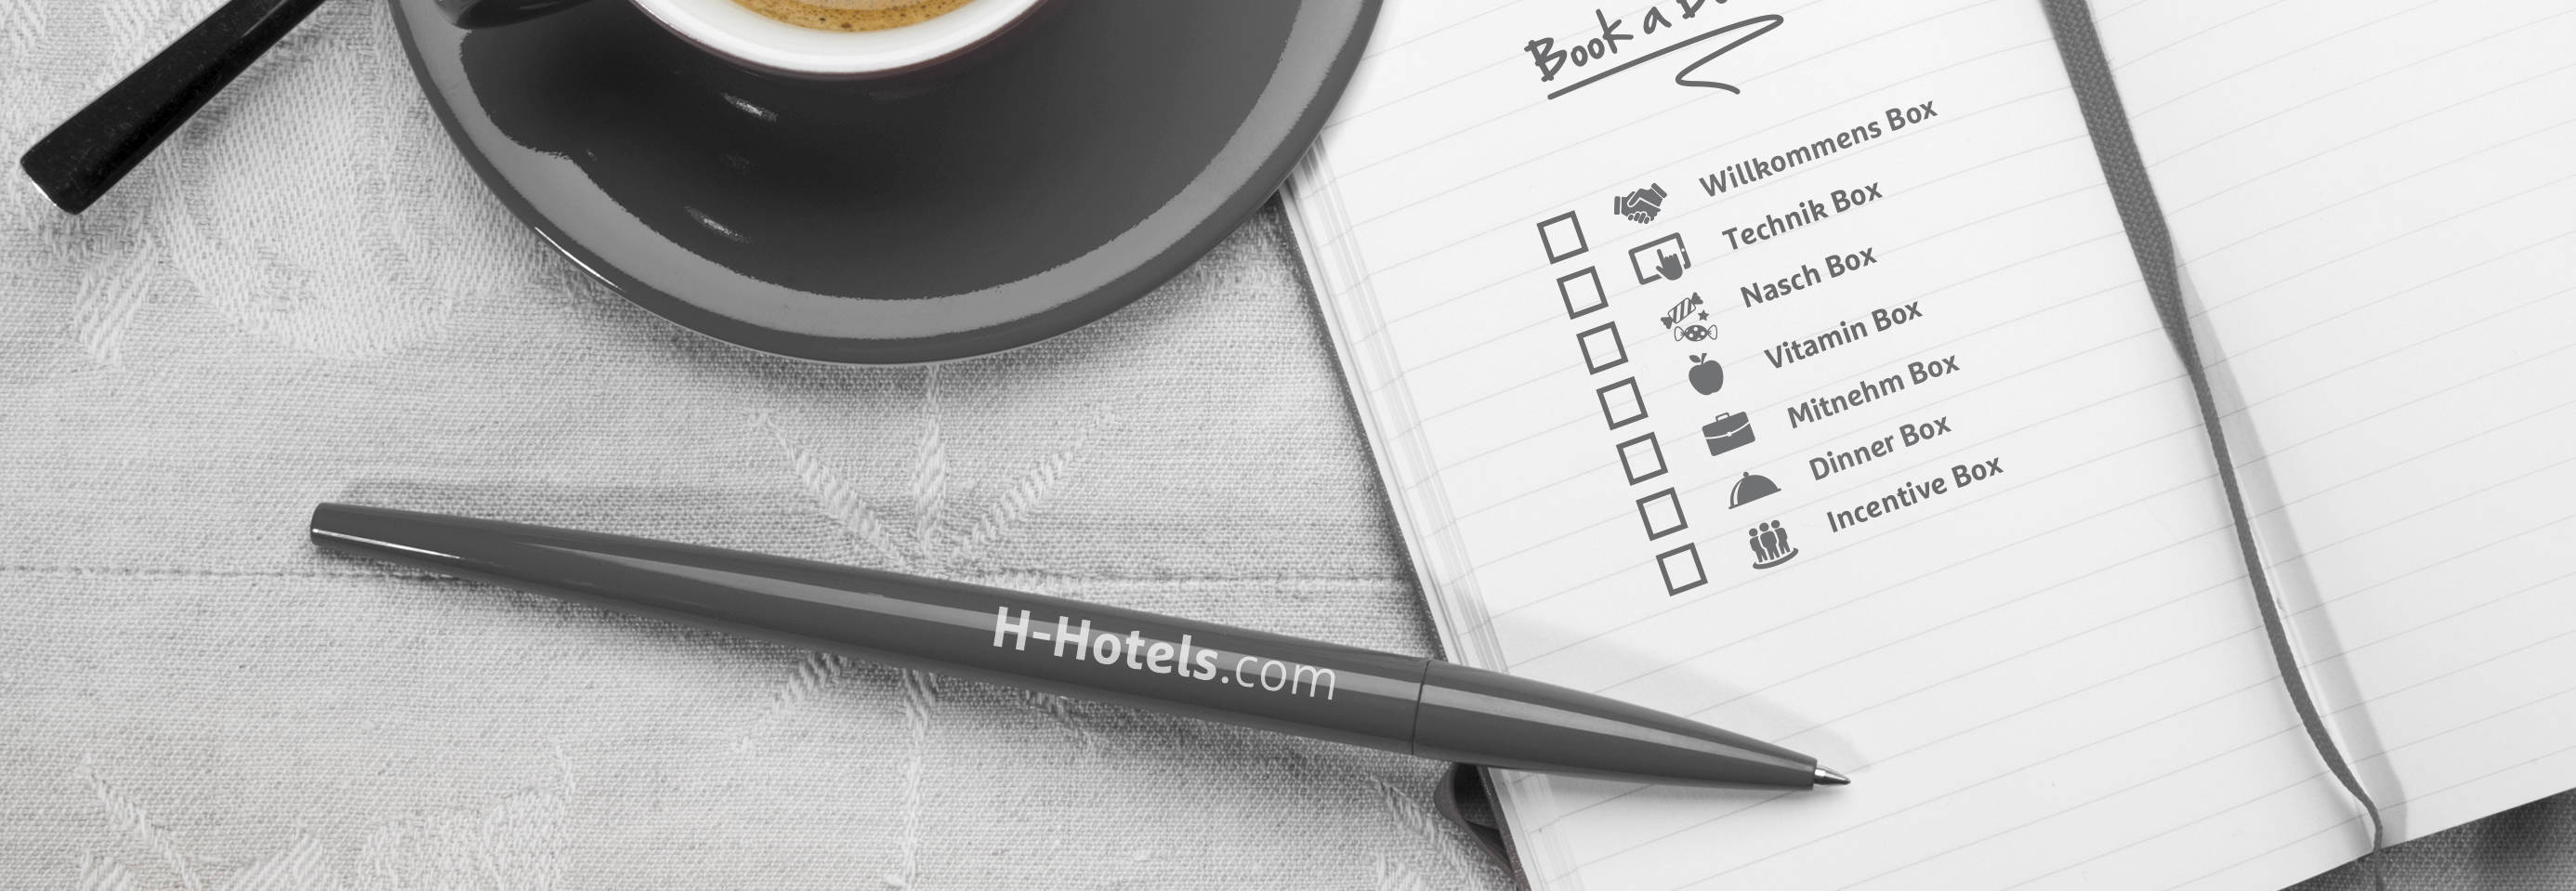 Extars - H-Hotels.com